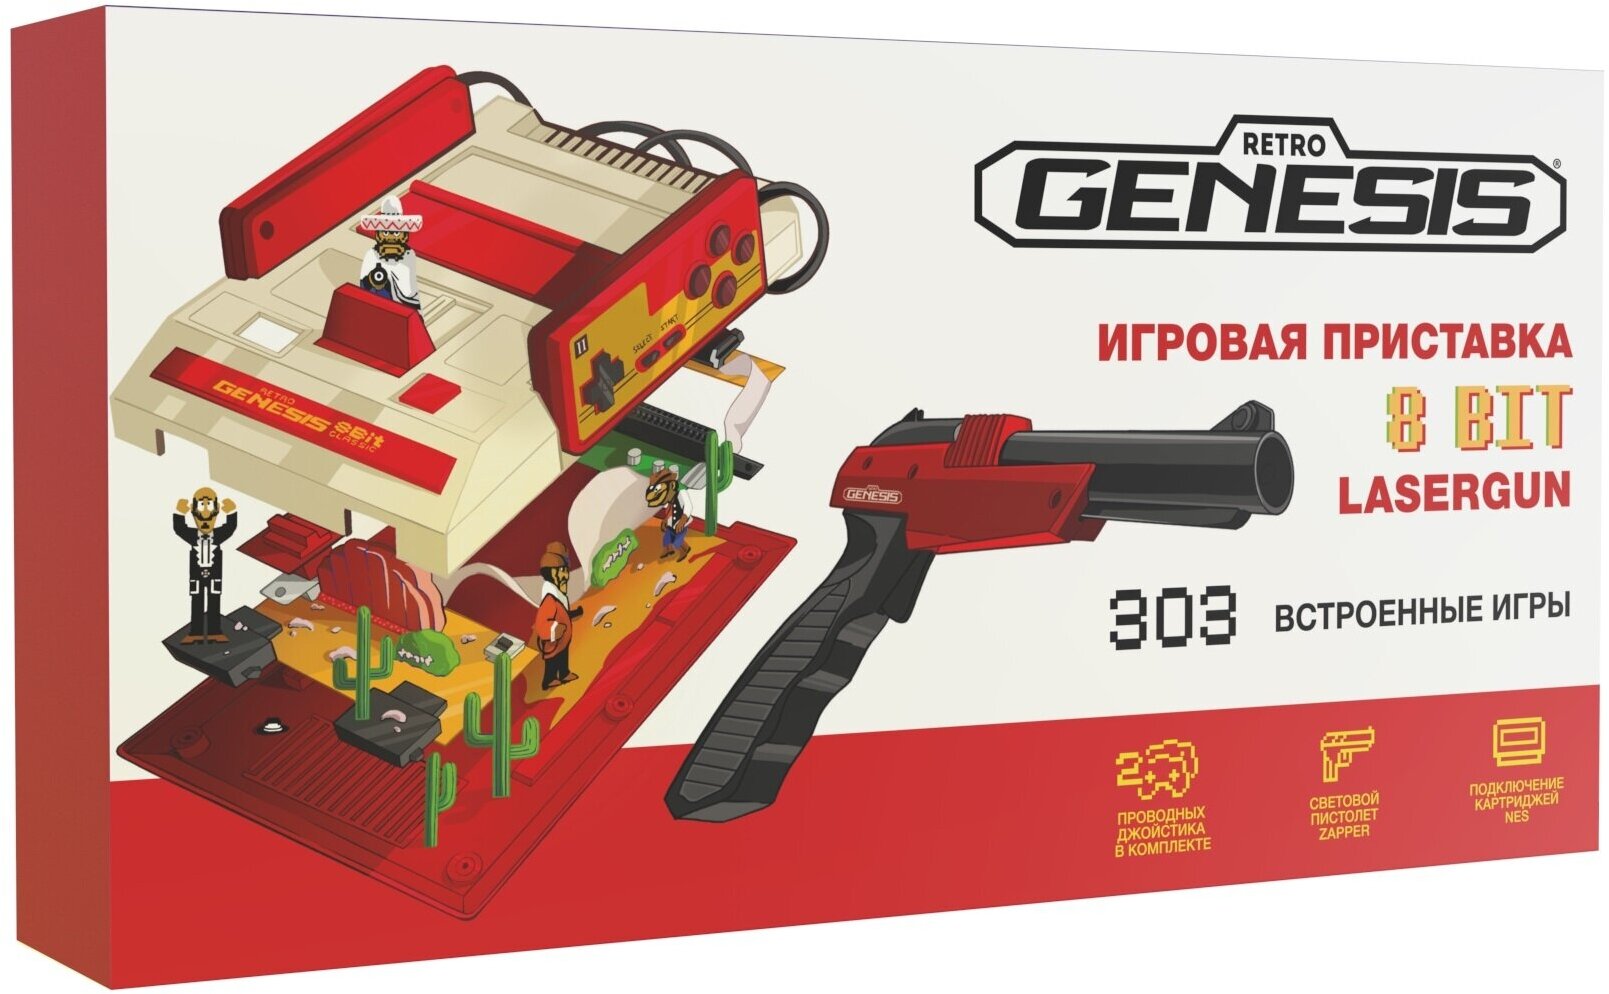 Игровая приставкаRetro Genesis8 Bit Lasergun + 303 игры, белый/красный - фотография № 14